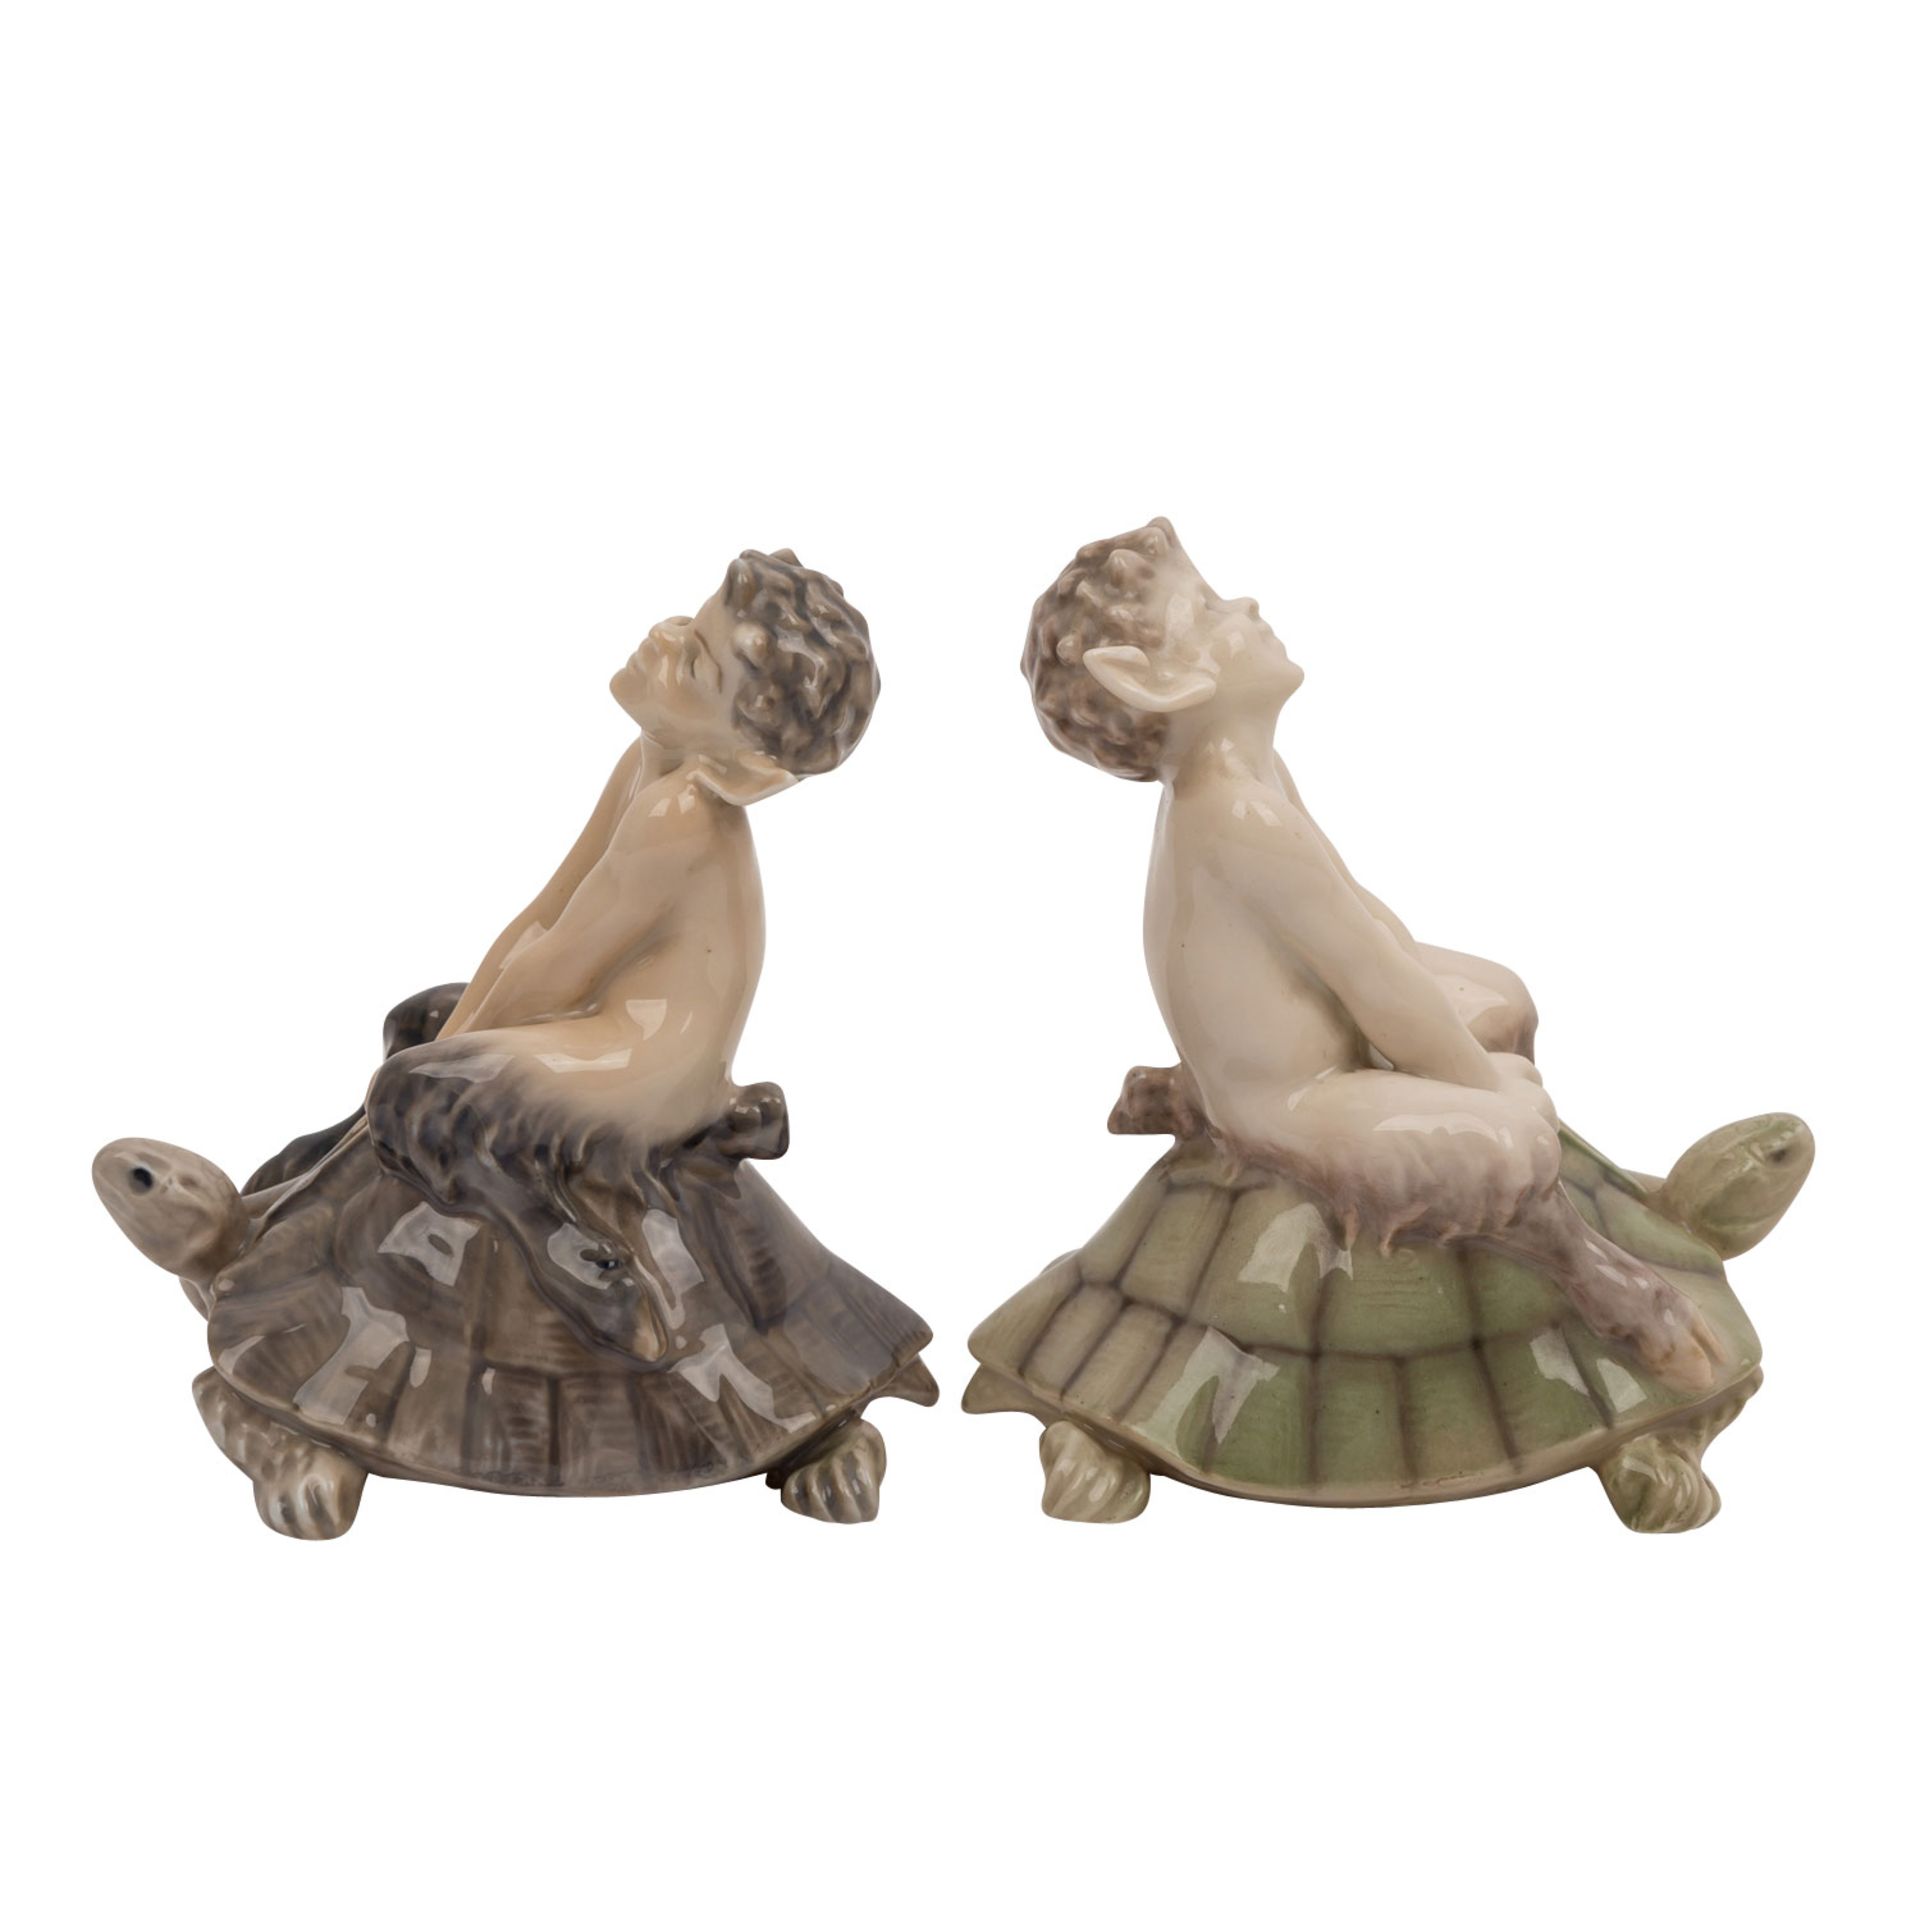 ROYAL COPENHAGEN, zwei Porzellanfiguren „Faun auf Schildkröte“um 1964, nach Entwurf von Christian - Image 5 of 6